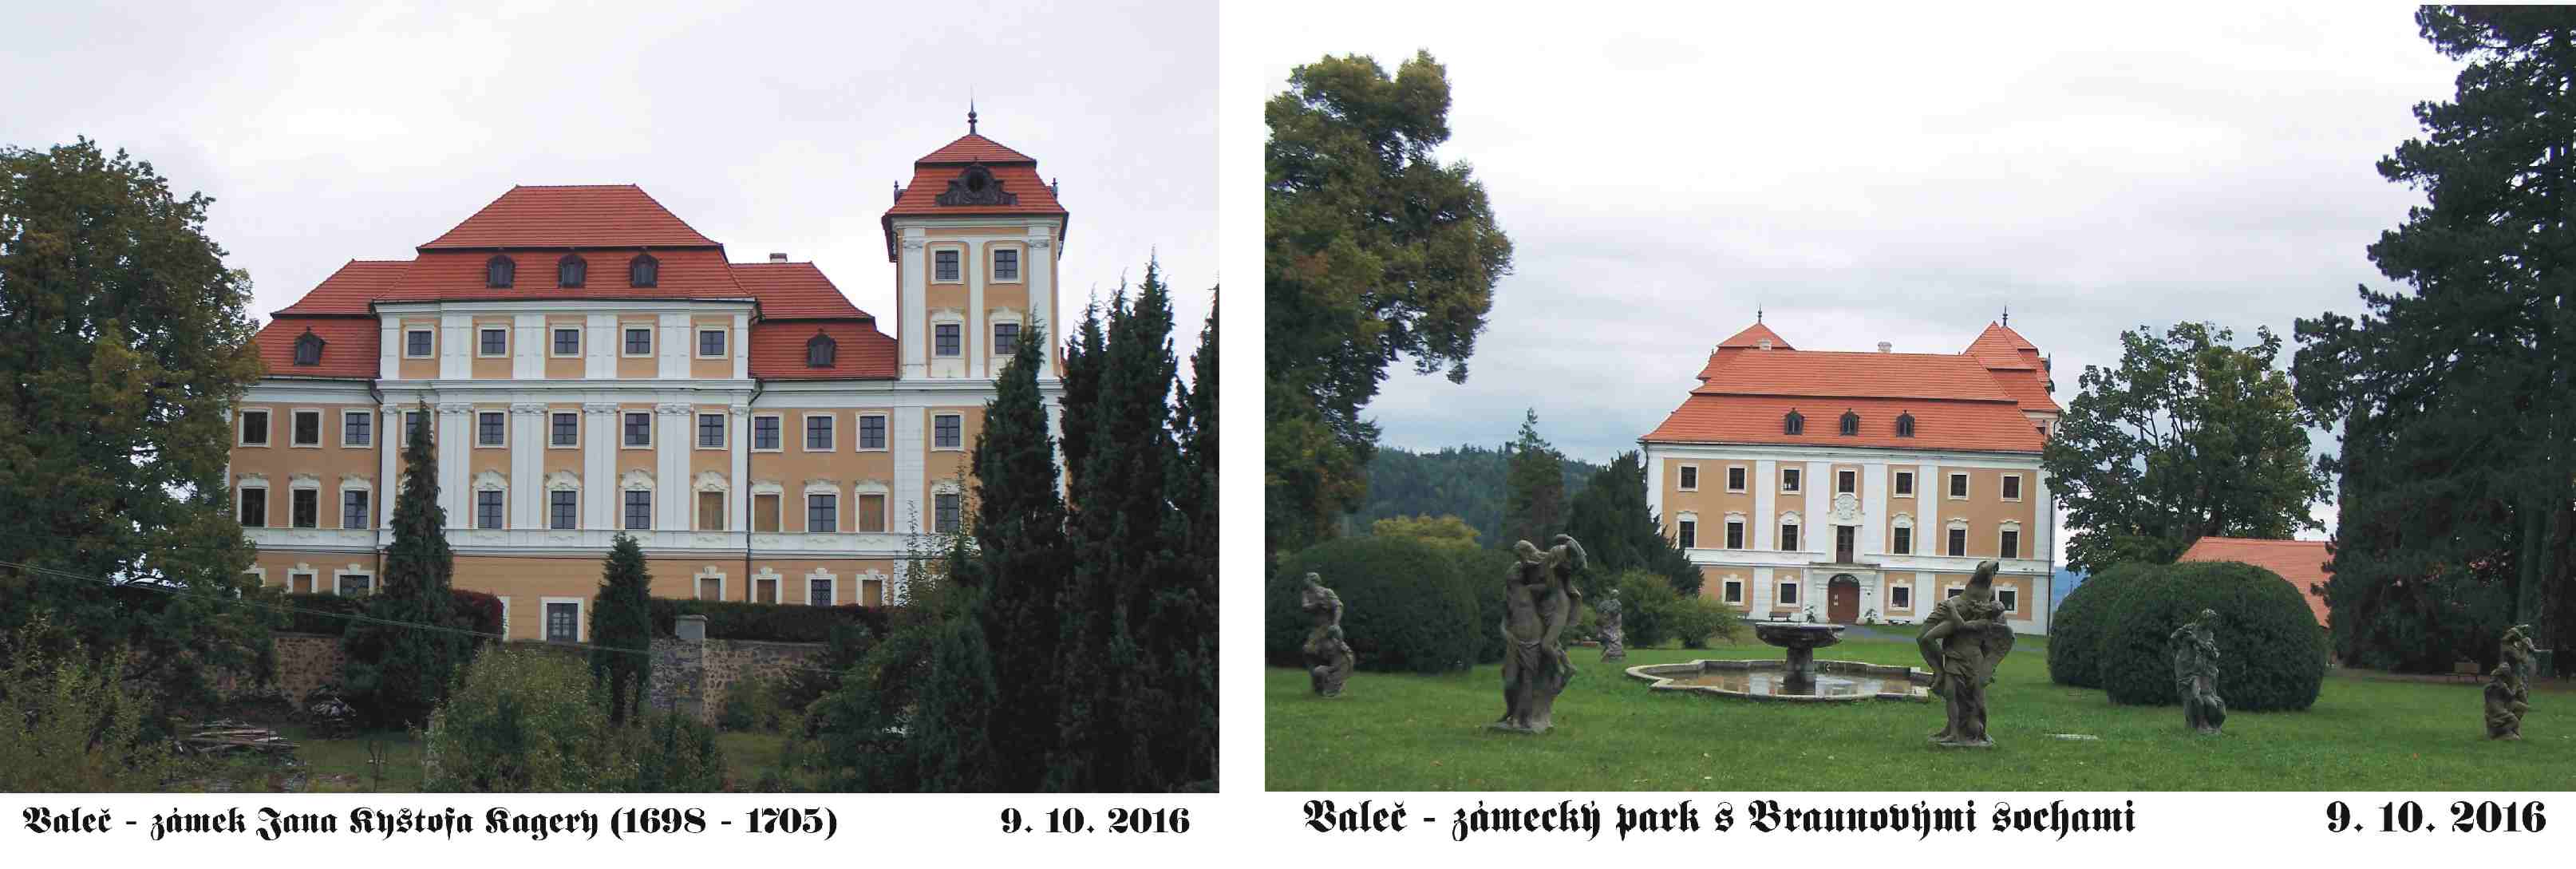 Valeč- zámek